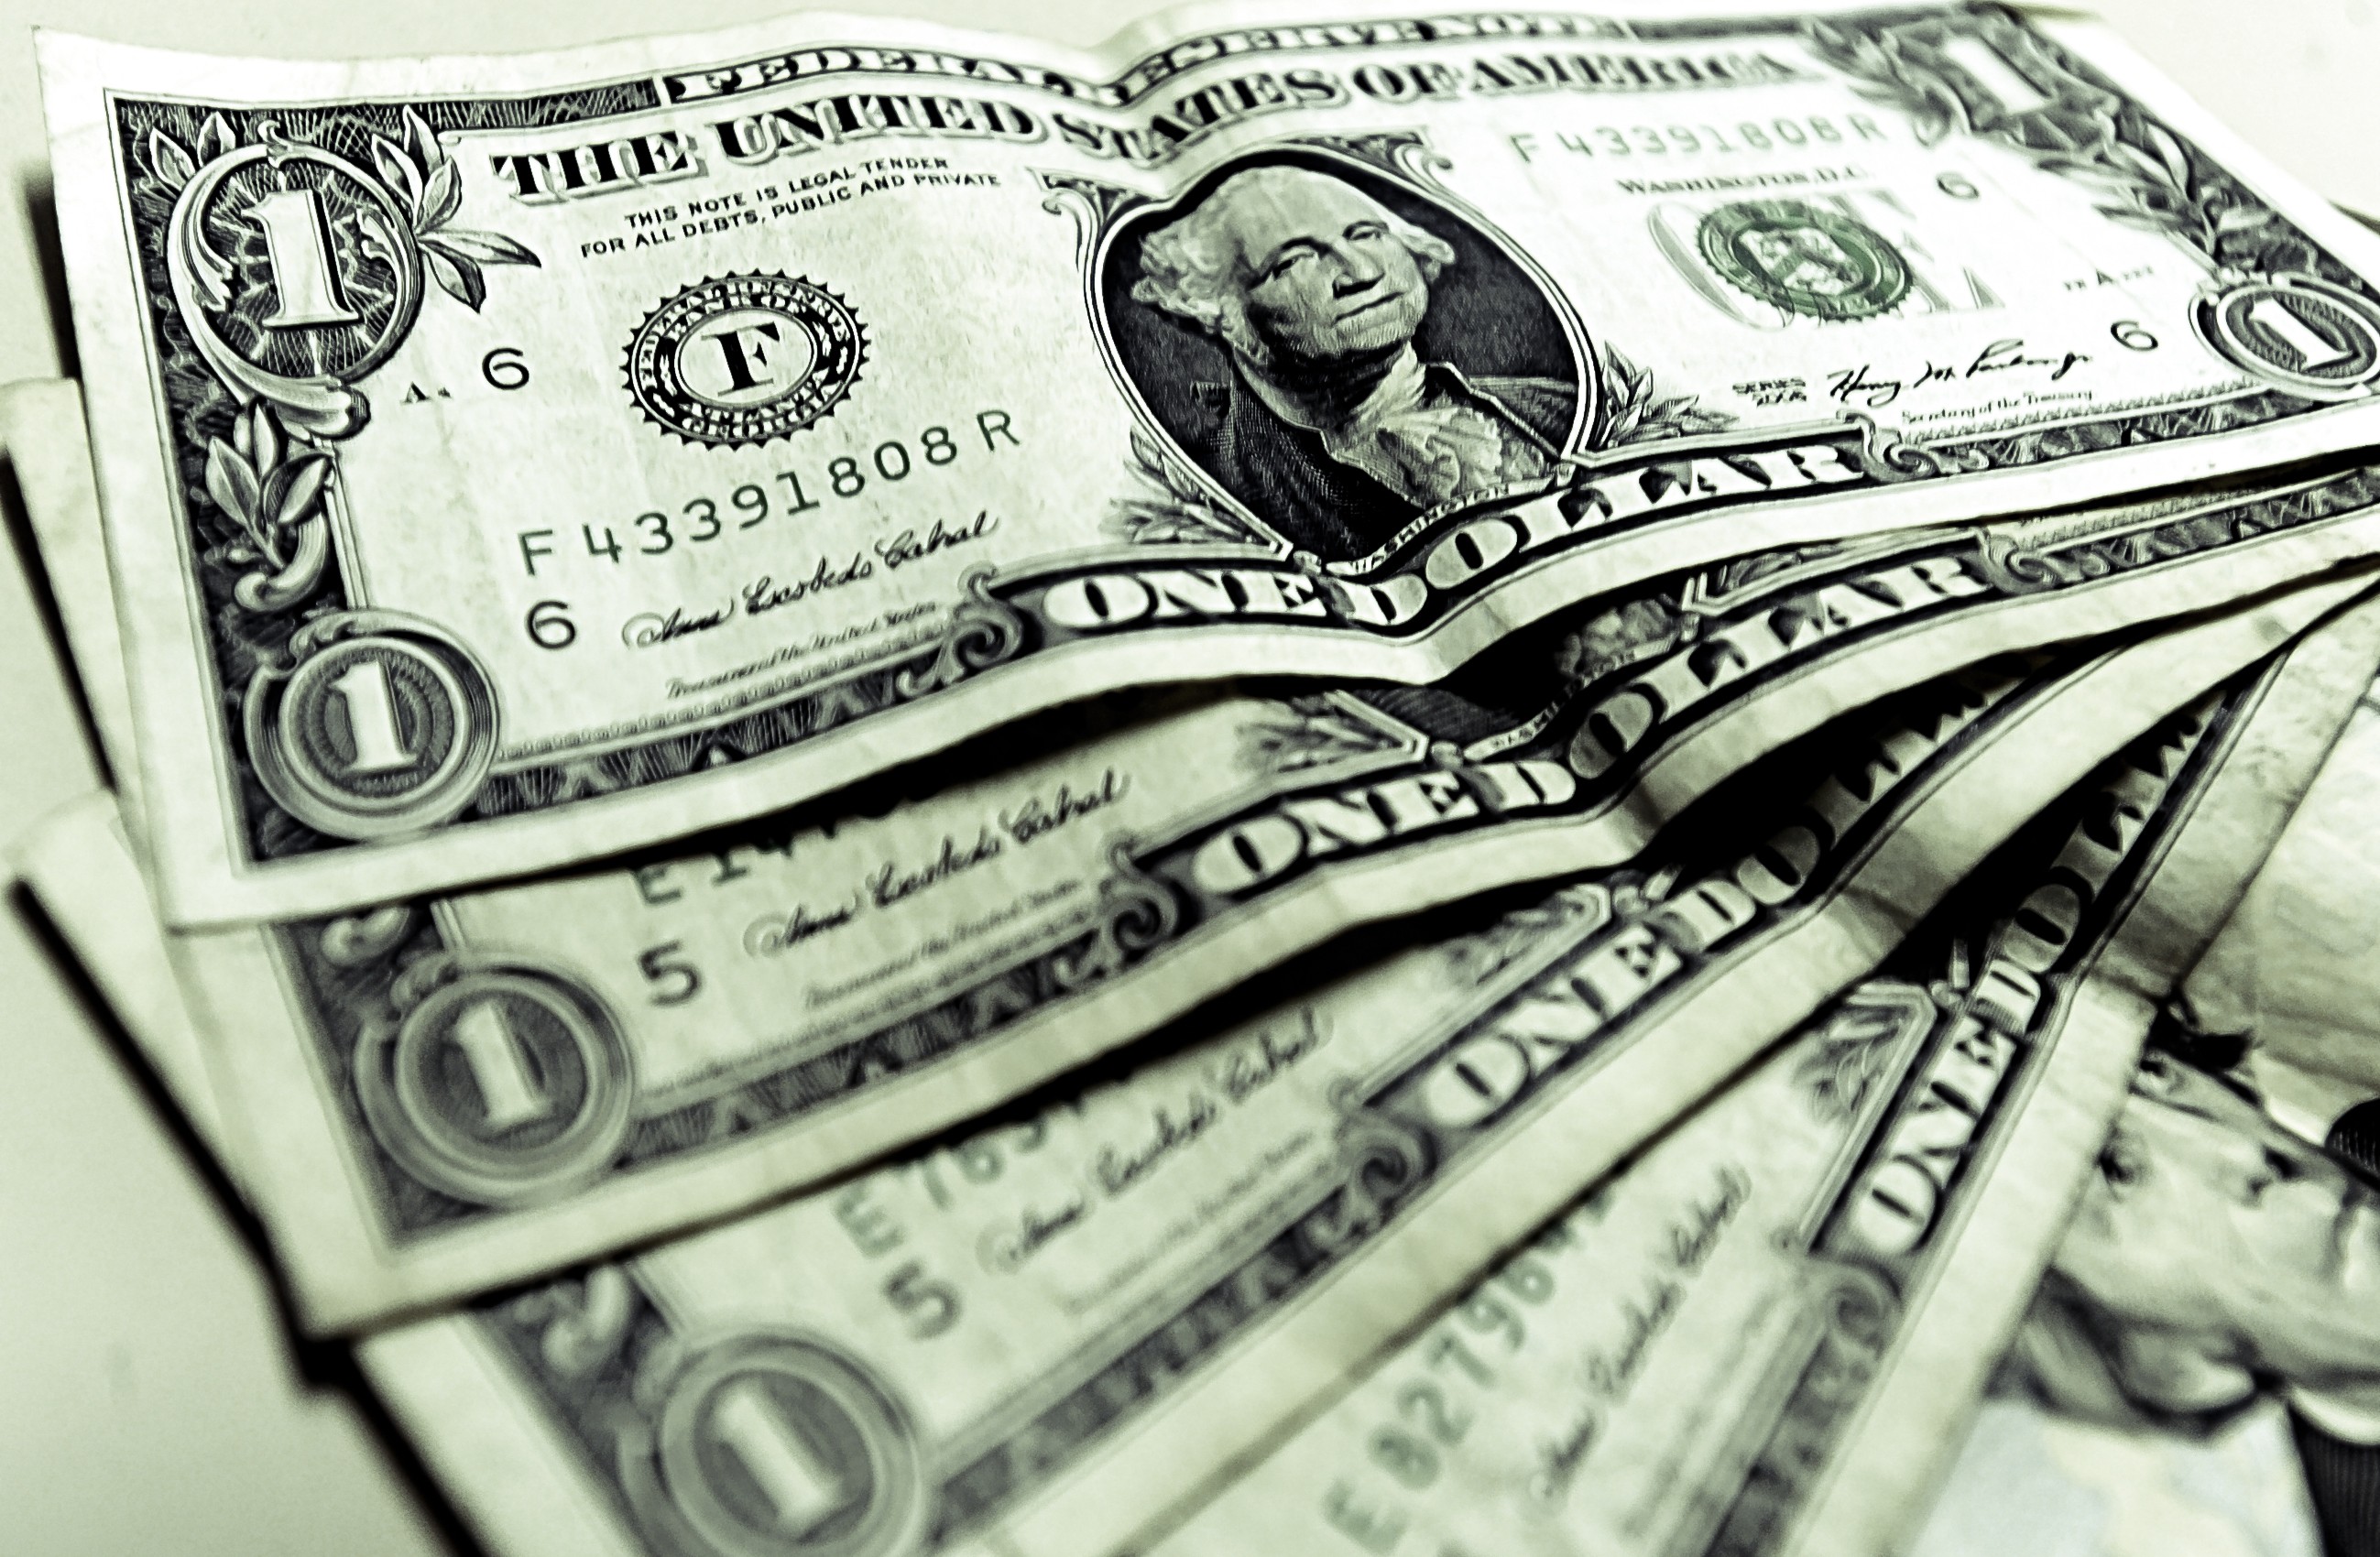 Fatores externos e internos explicam alta do dólar, dizem economistas